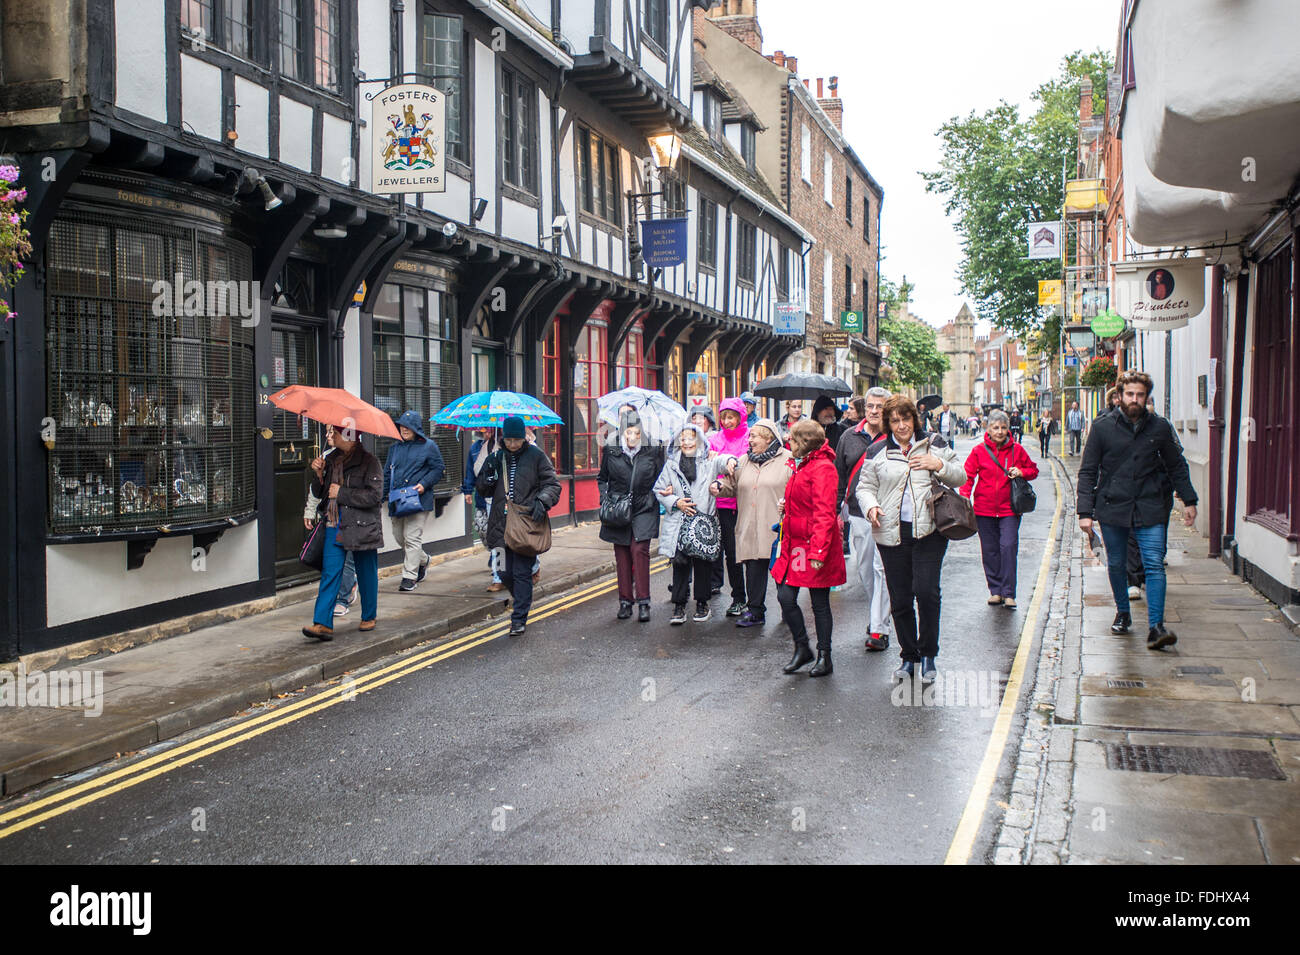 Les touristes passent dans la rue dans la ville de York dans Yorkshire, Angleterre, Royaume-Uni. Banque D'Images